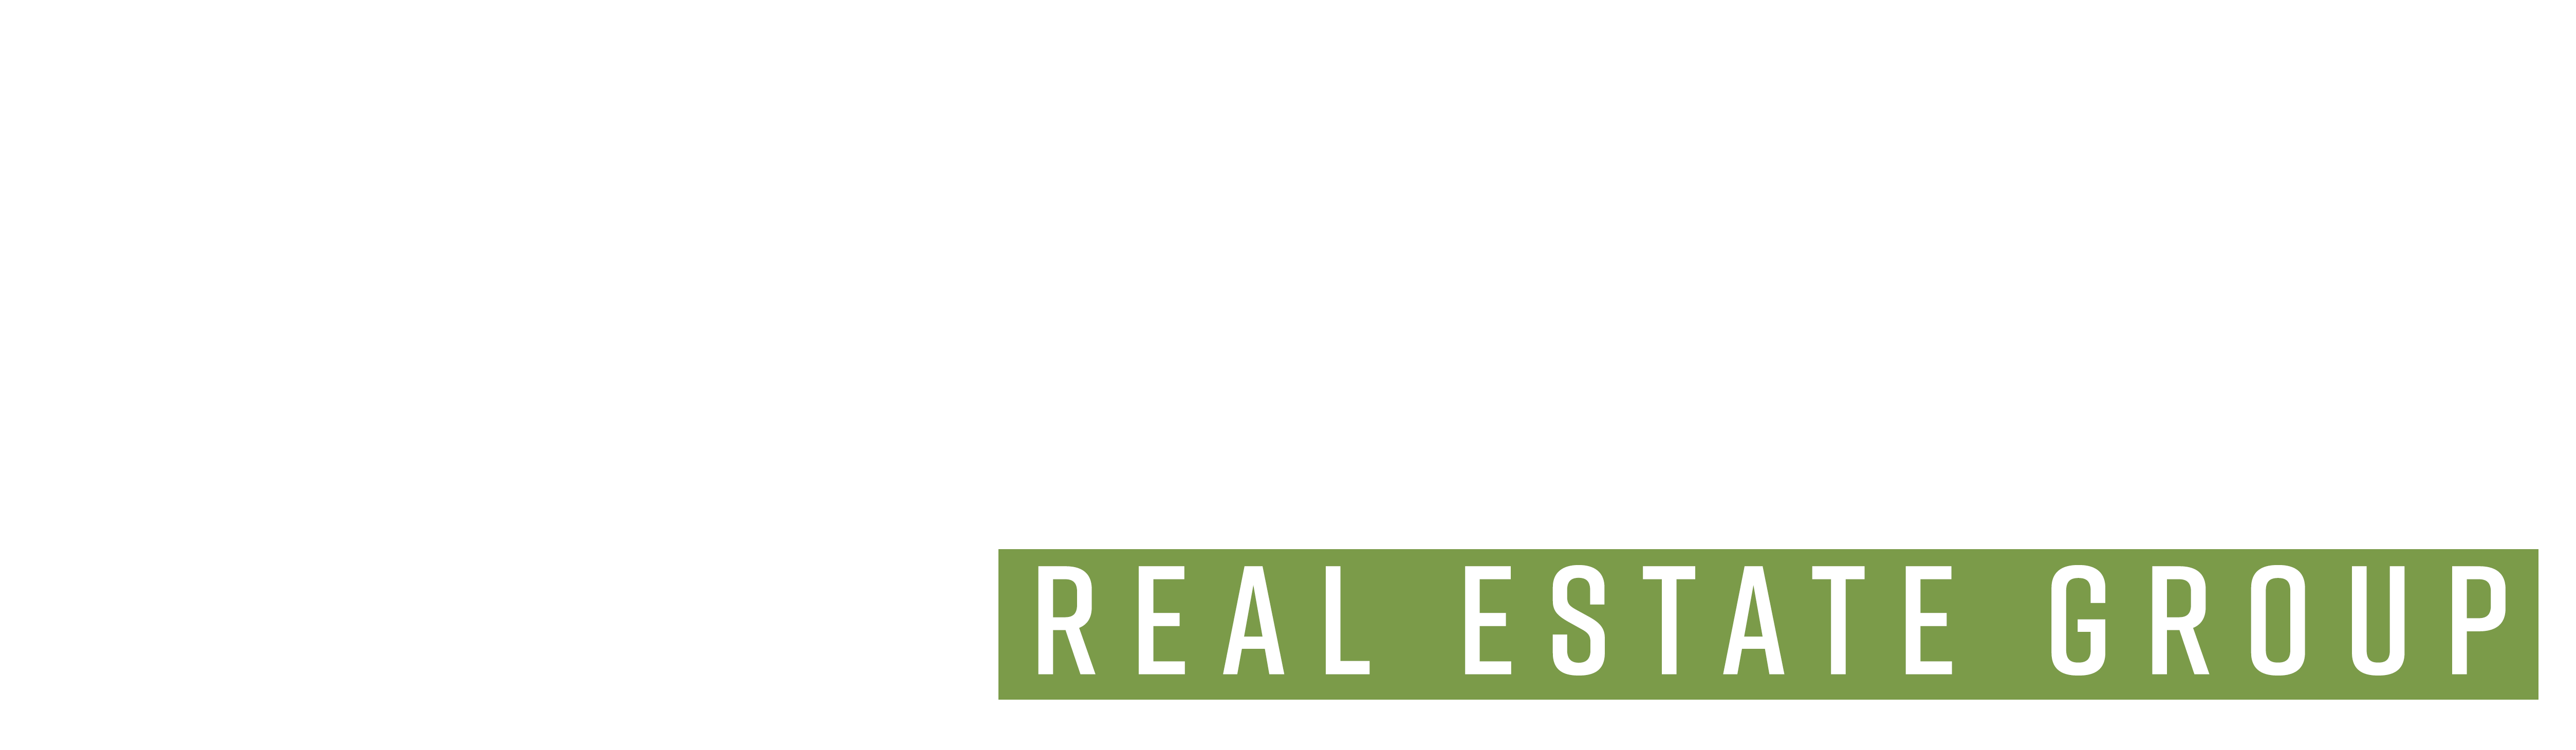 Verde Real Estate Group